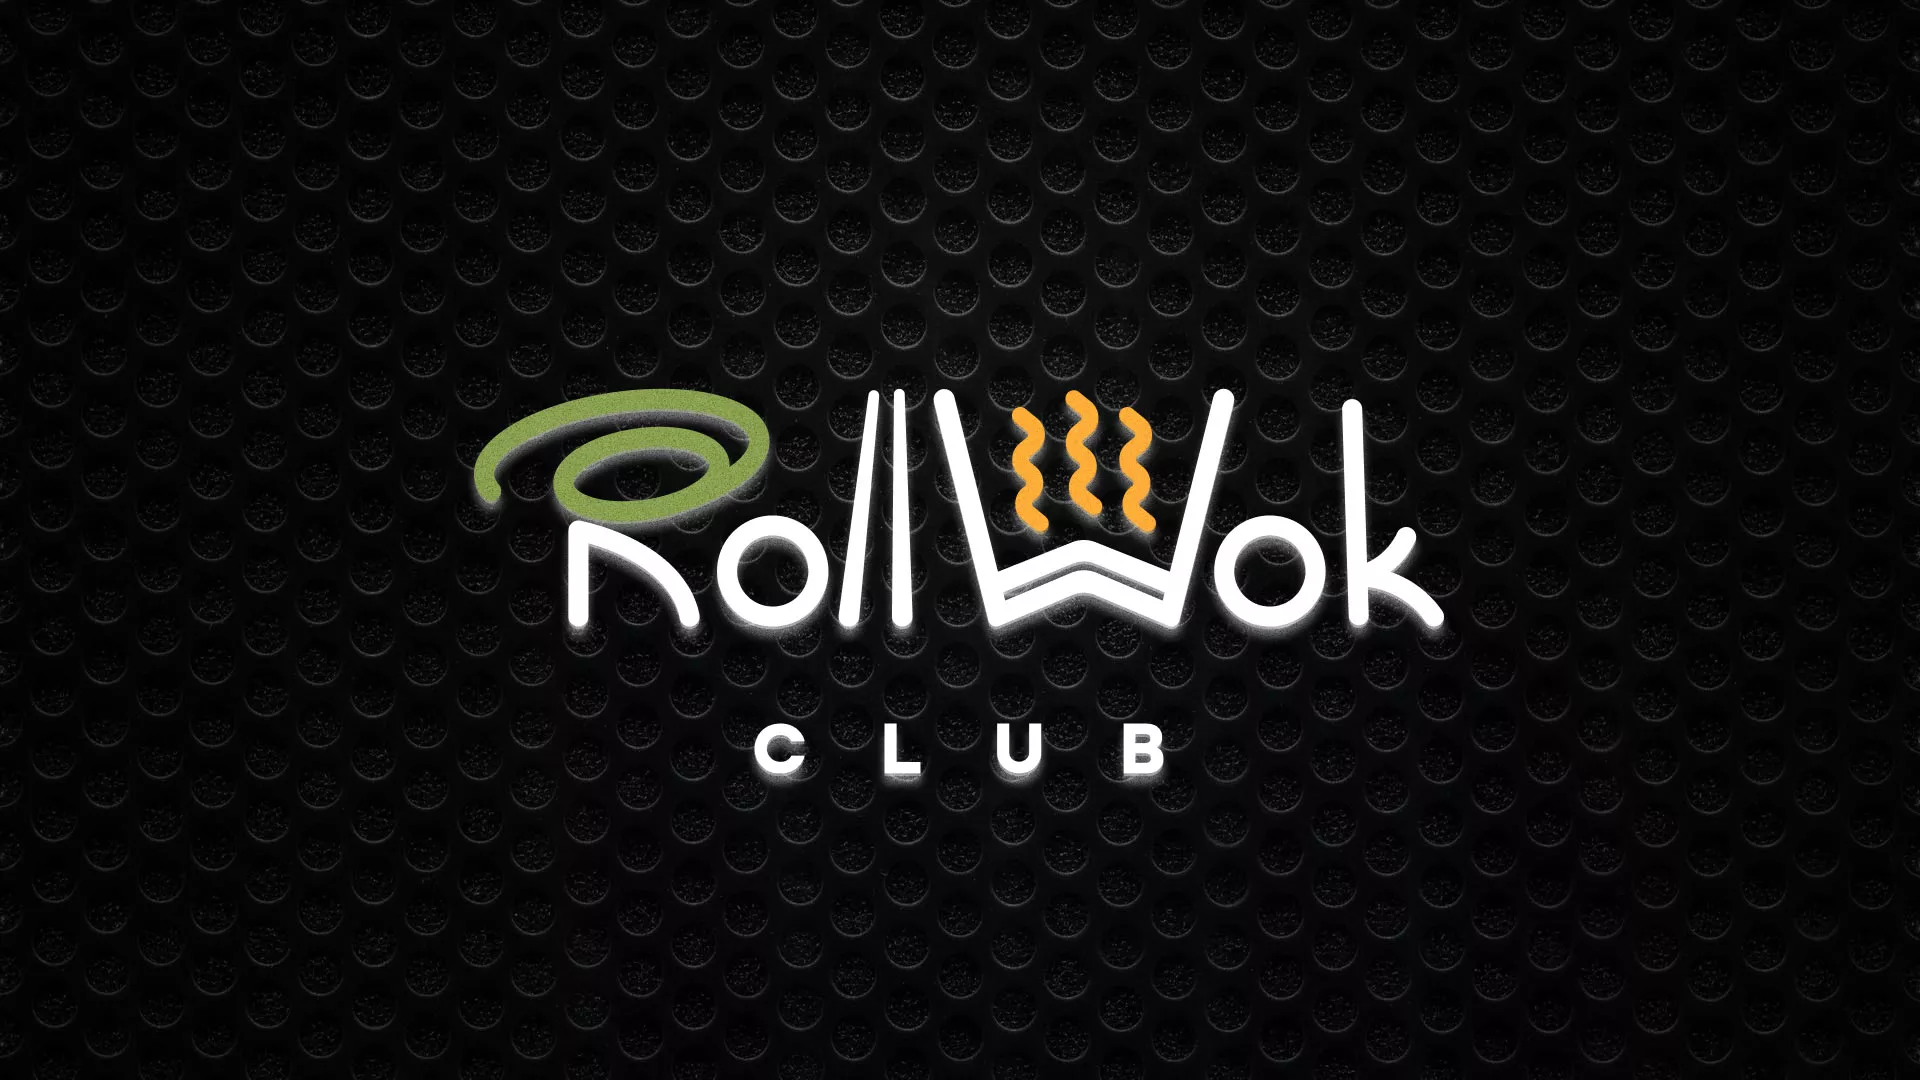 Брендирование торговых точек суши-бара «Roll Wok Club» в Могоче